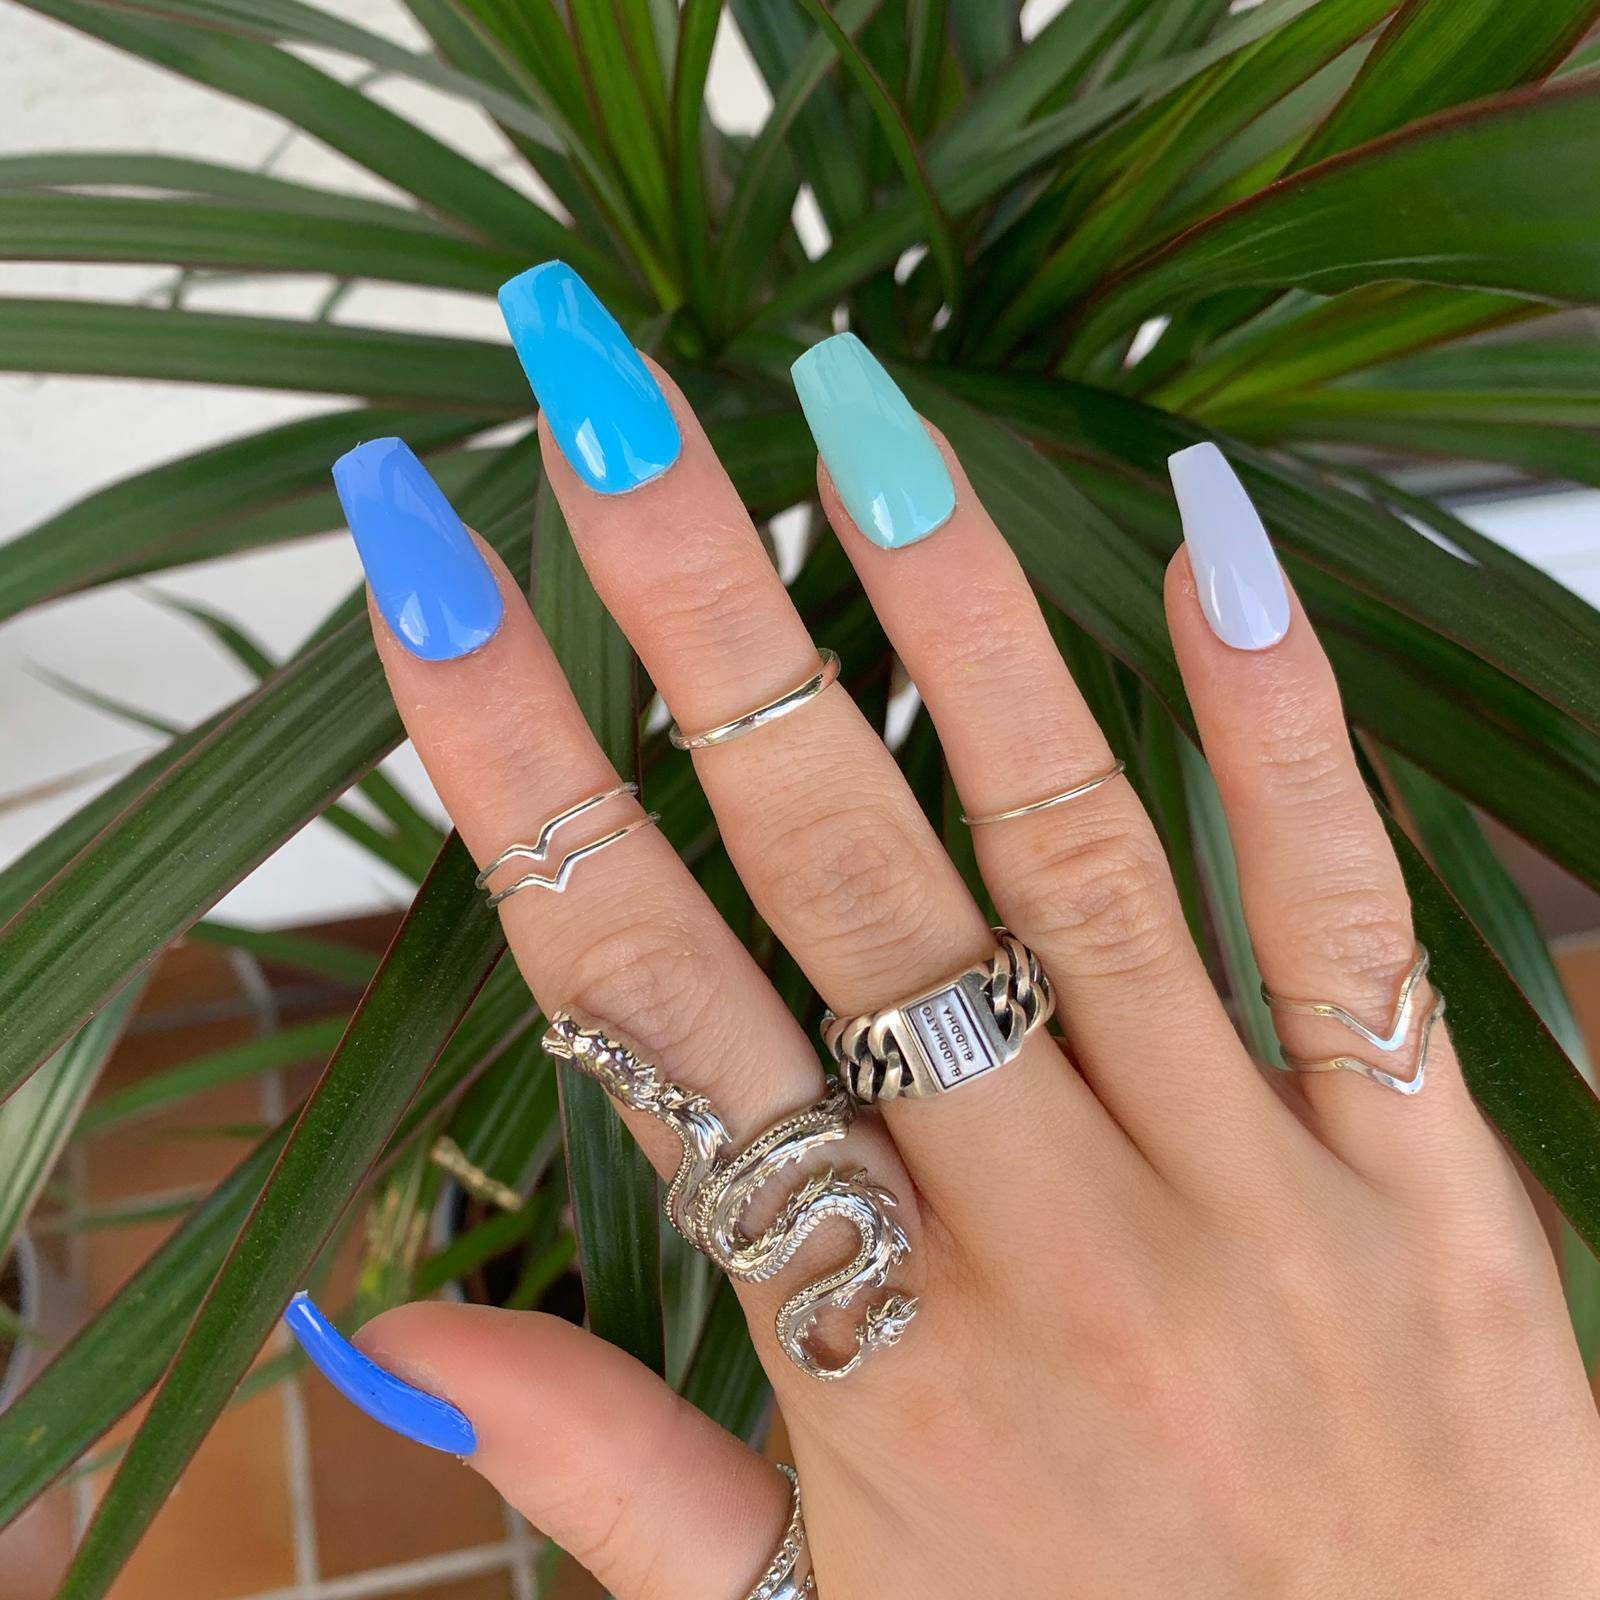 Aqua Presione las uñas en tonos azules brillantes o mate - Etsy México